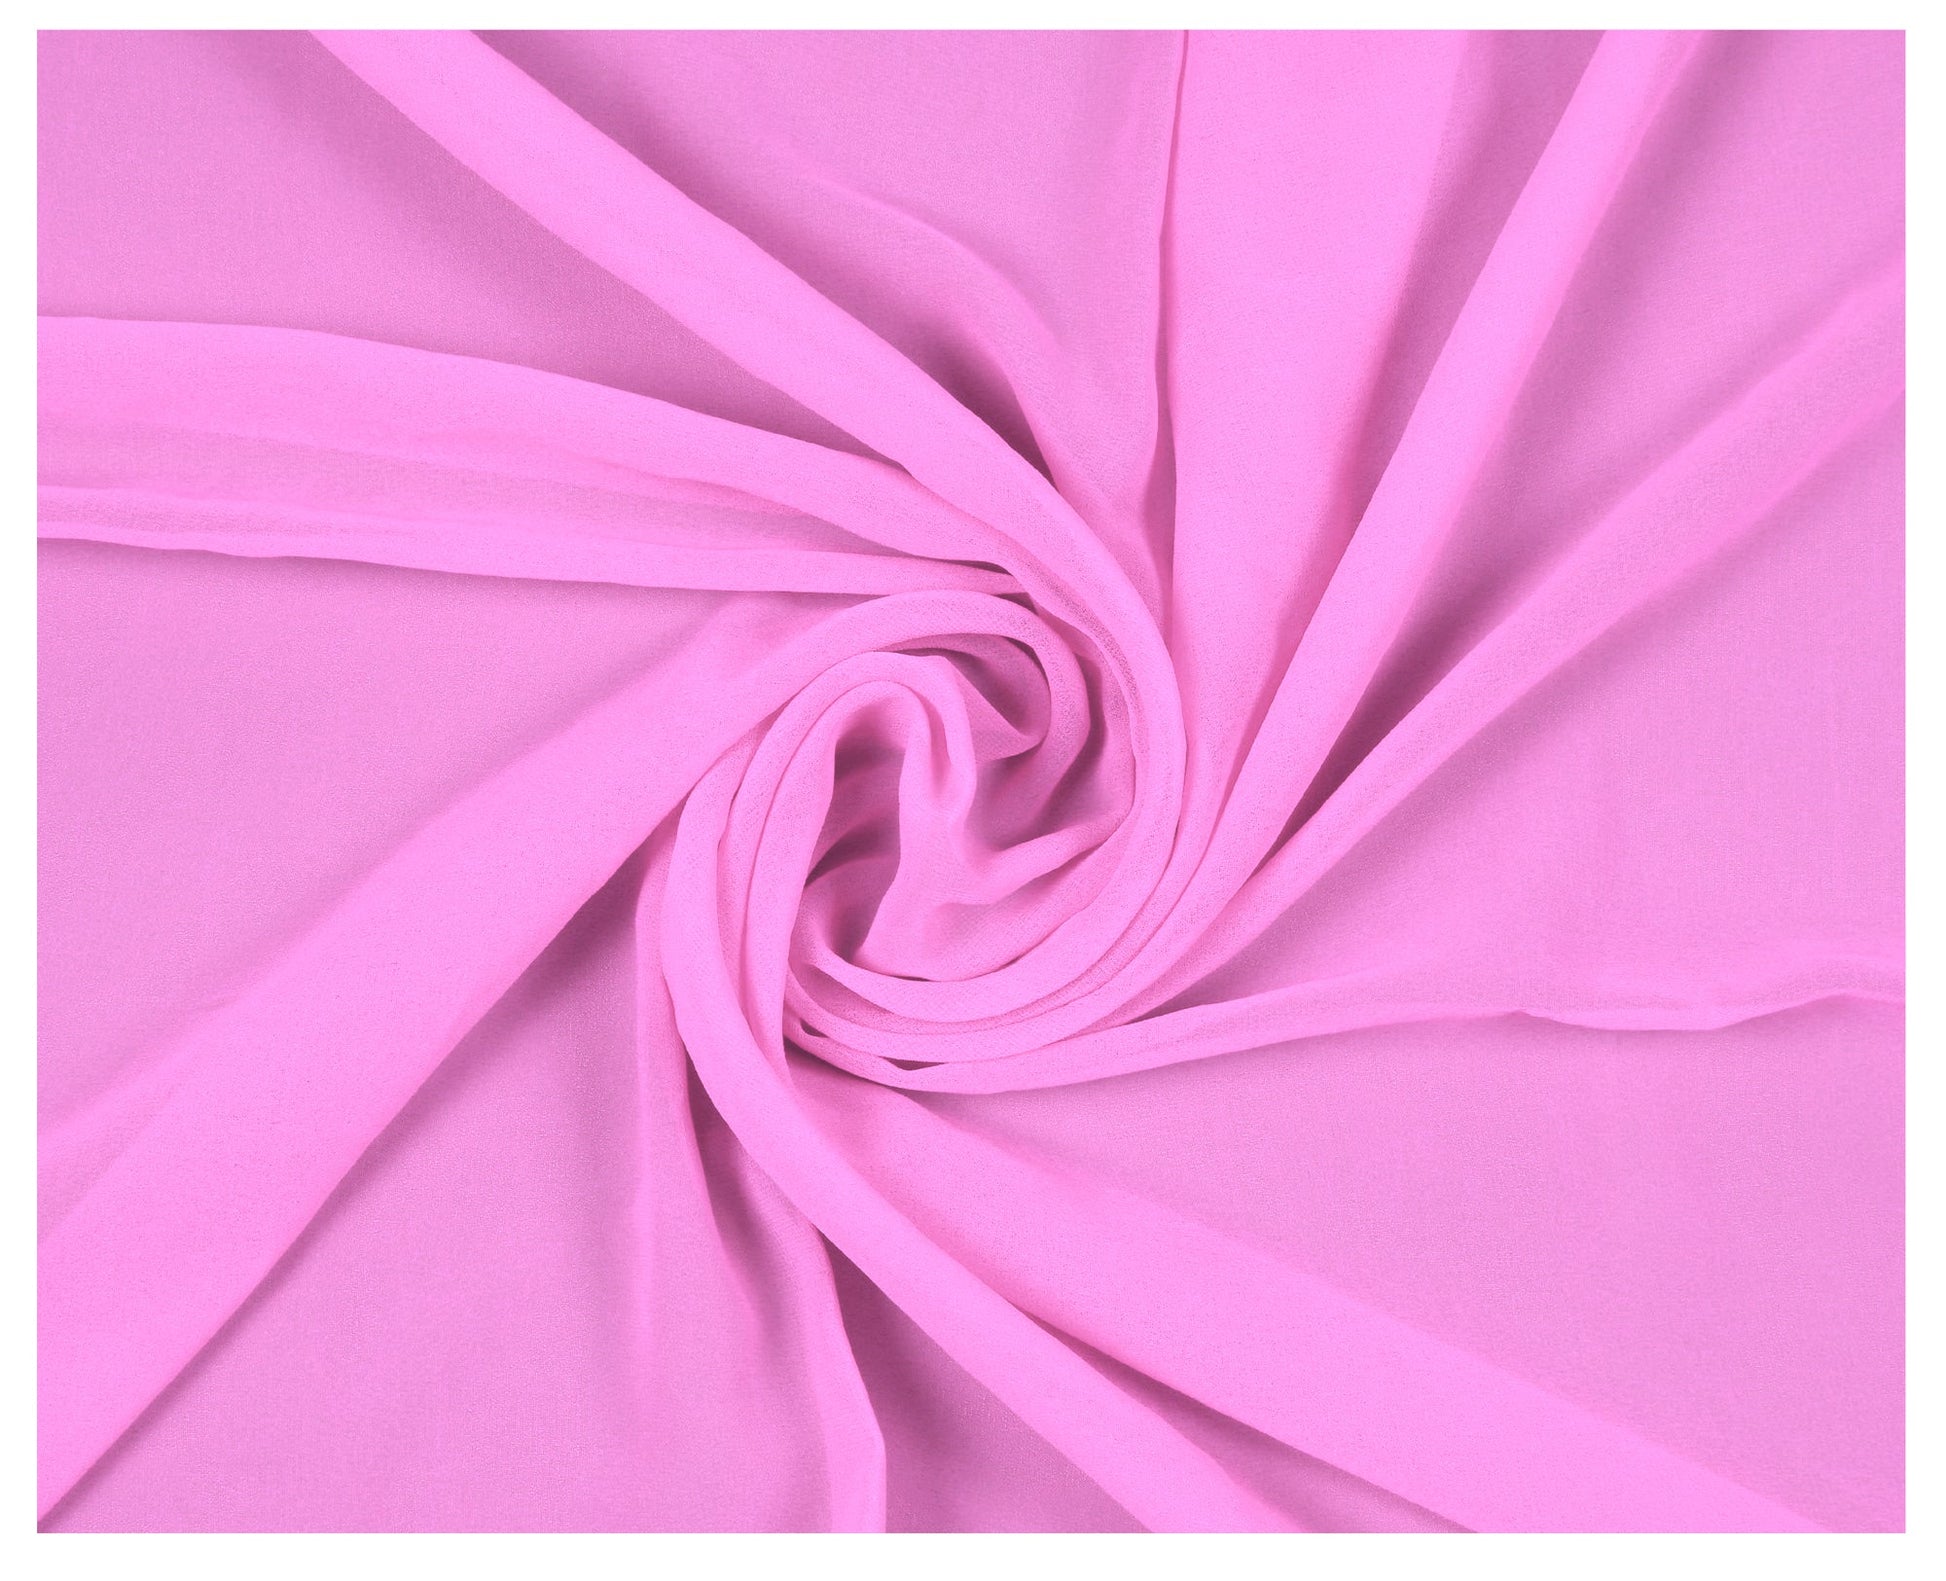 Bubblegum Pink,6639f1b3-cd5f-40b2-900b-f5fa963ea550